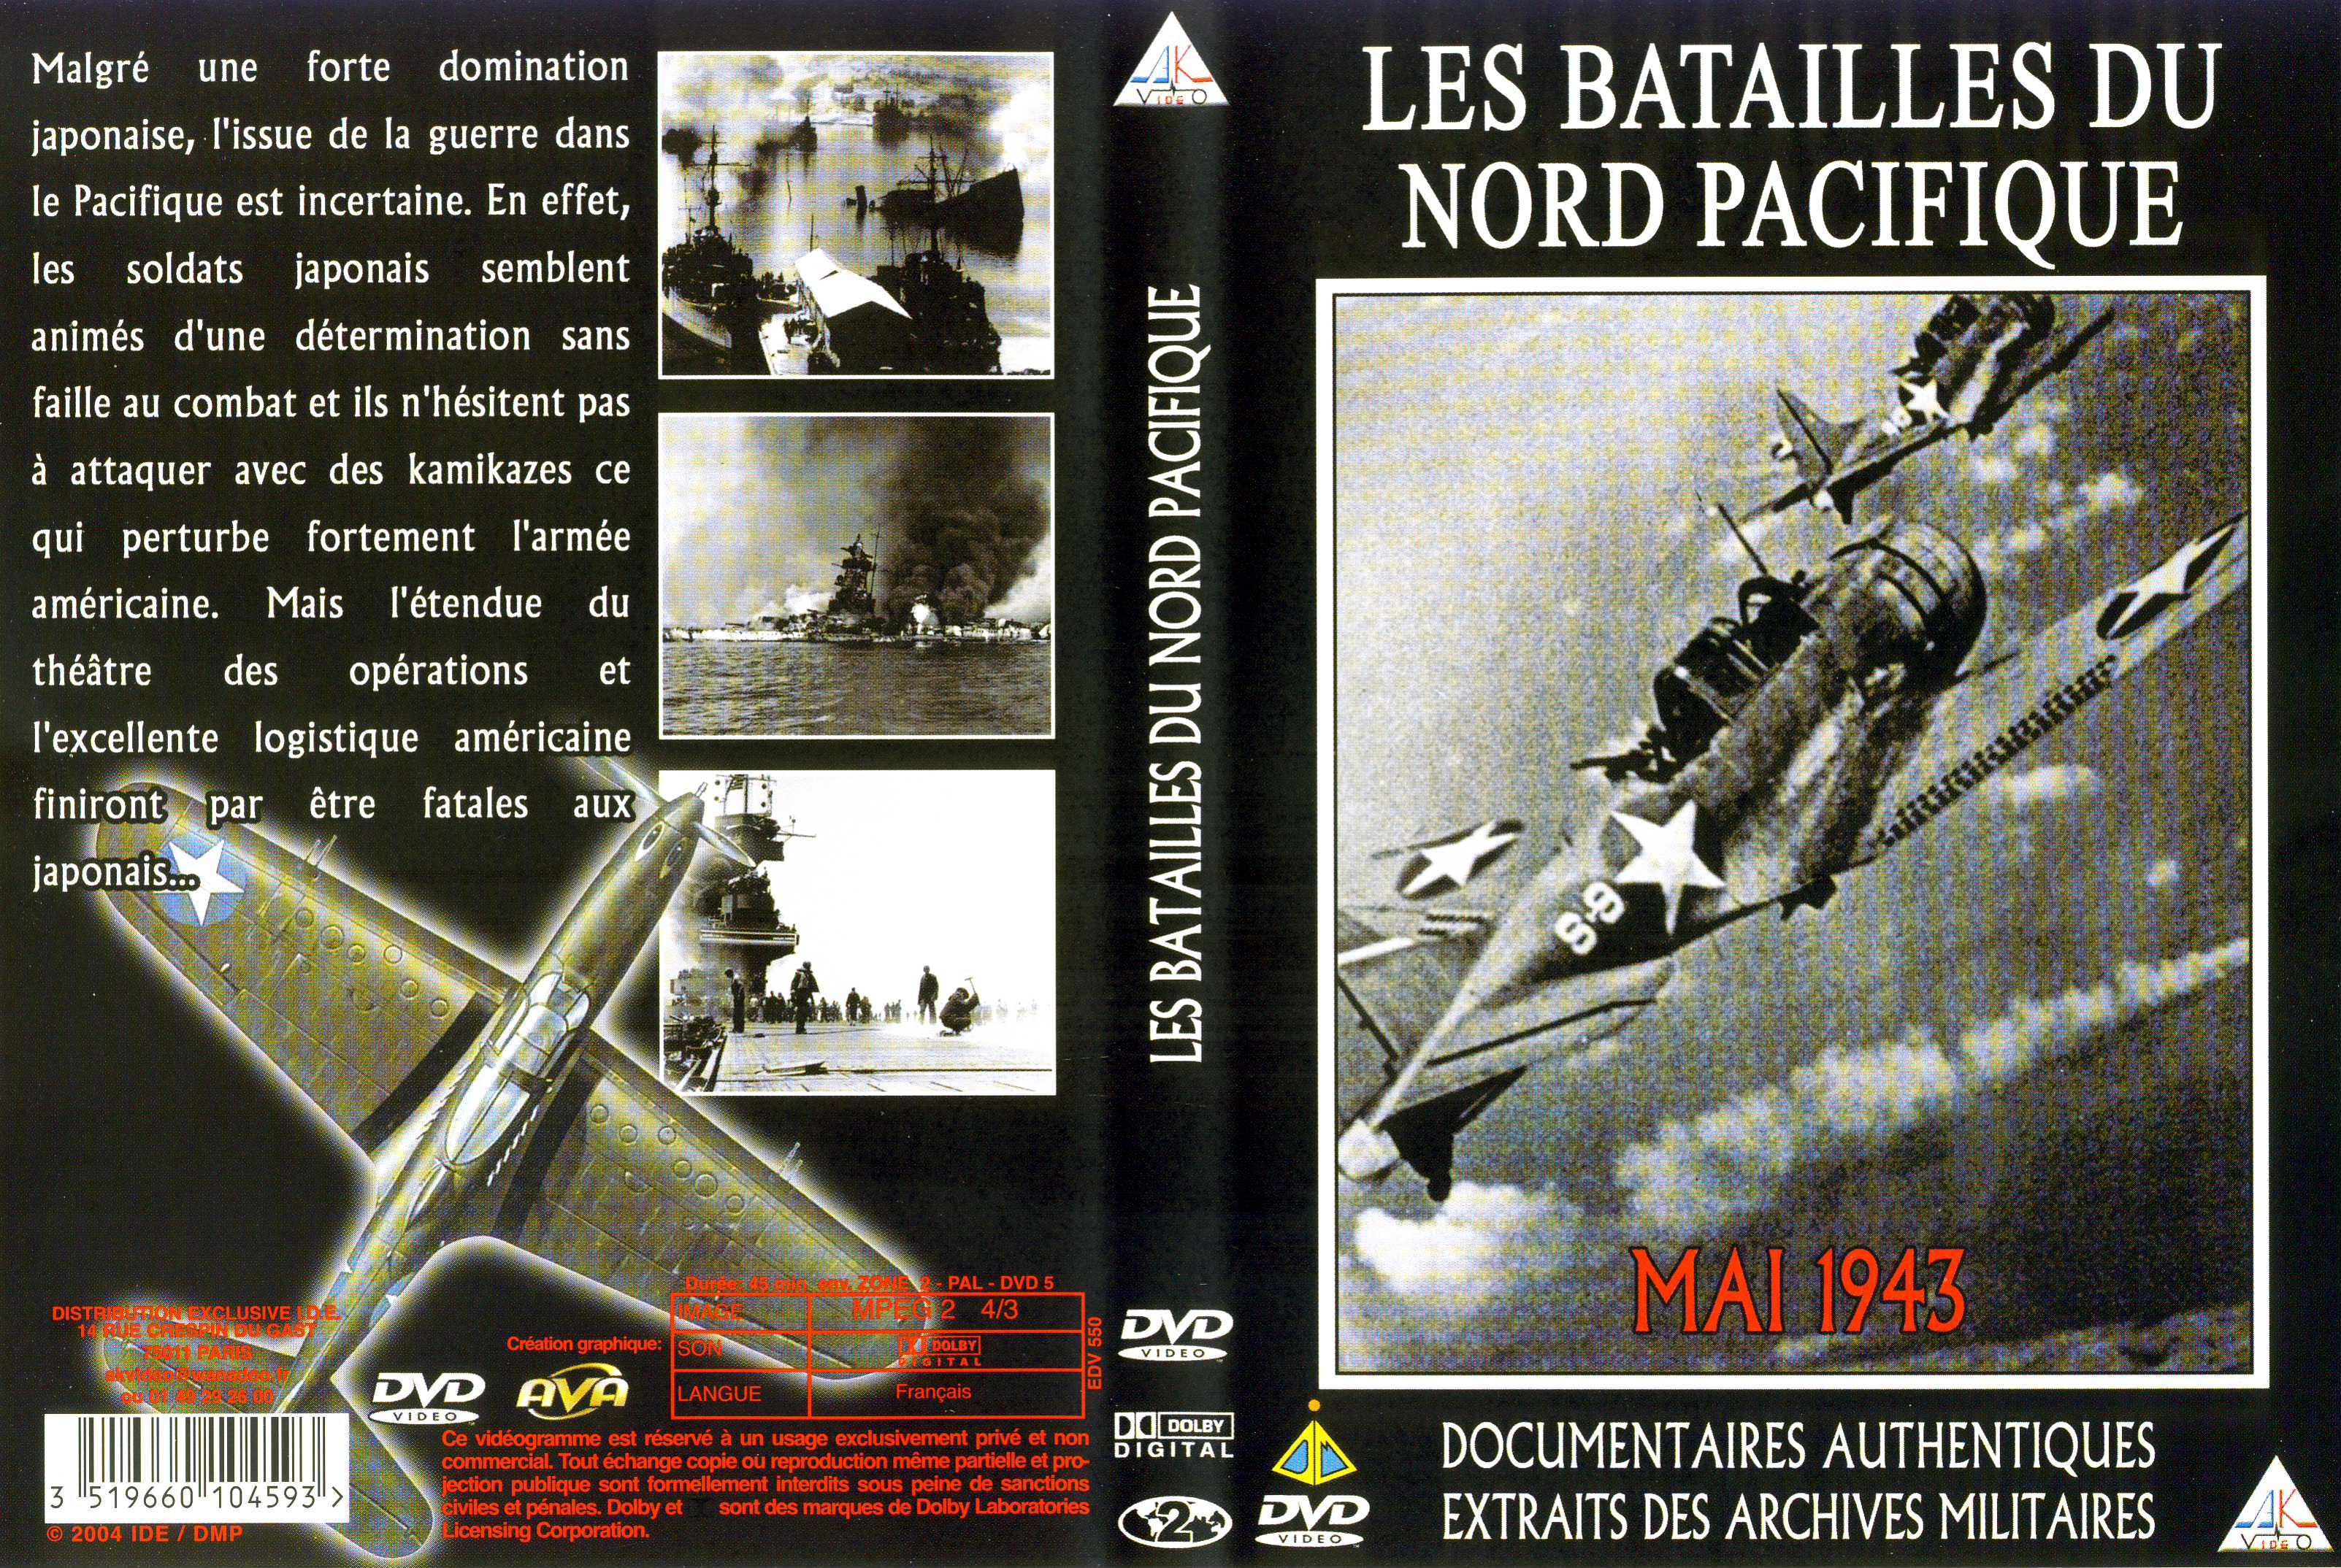 Jaquette DVD Les batailles du nord pacifique